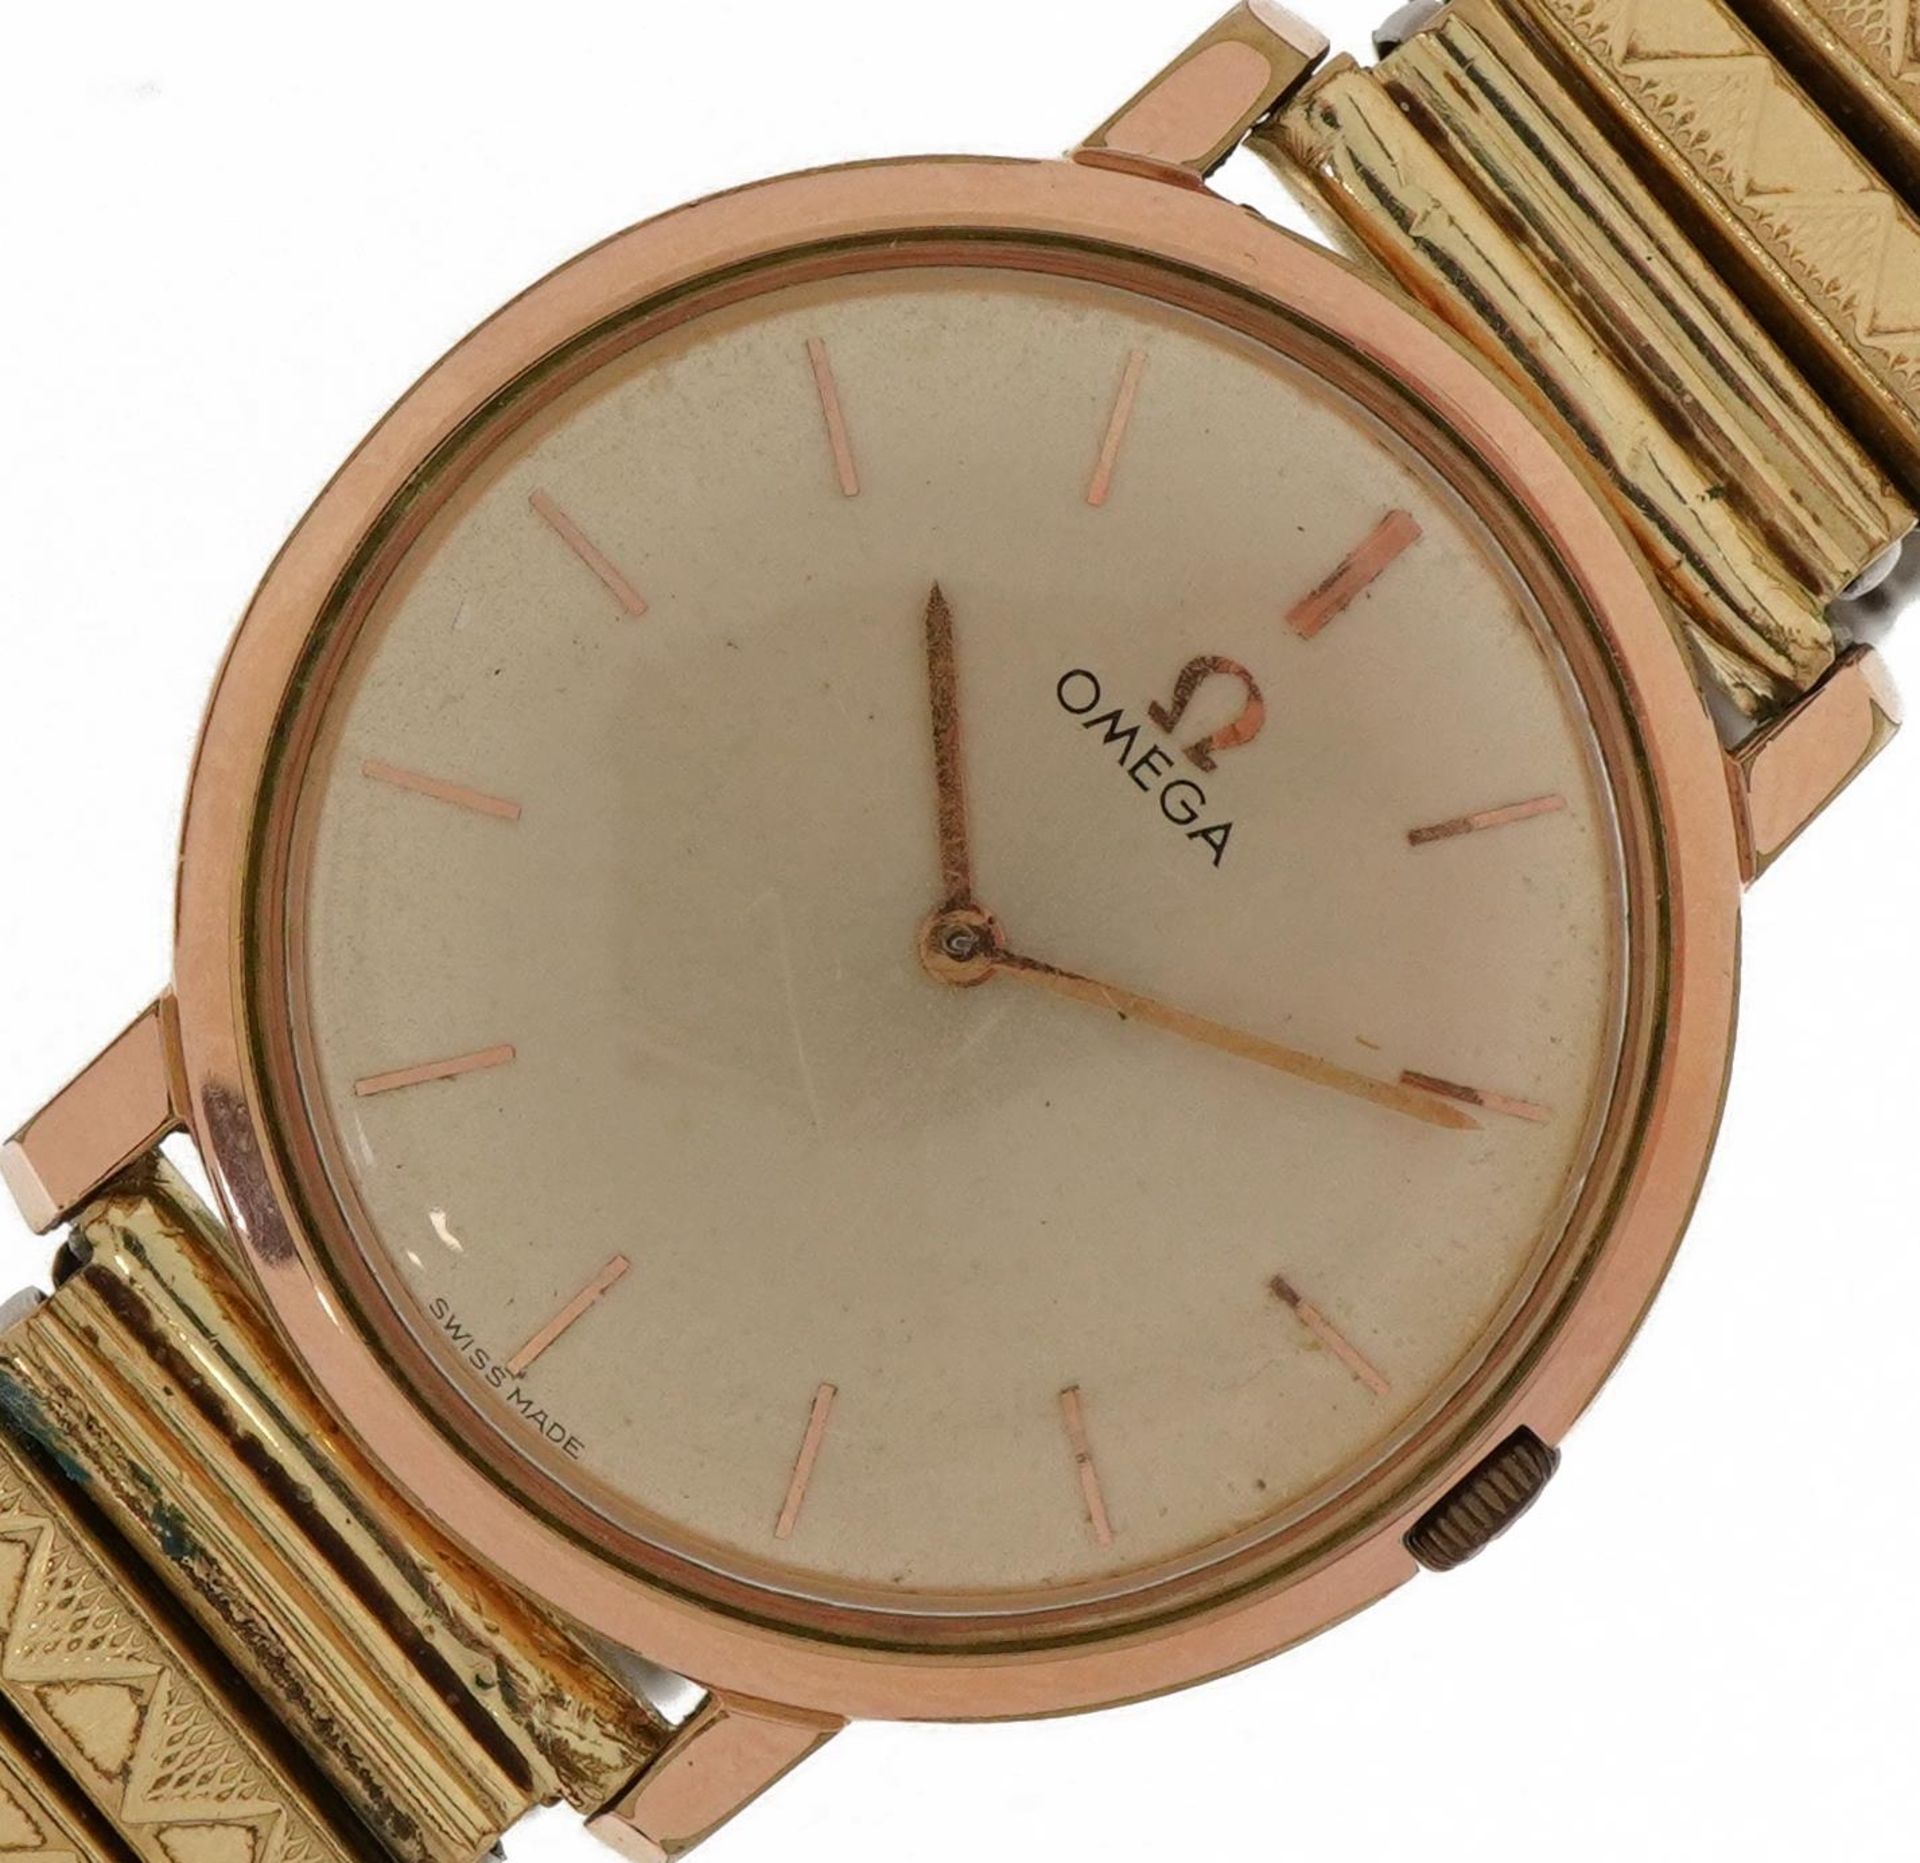 Omega, gentlemen's wristwatch, the case 30mm in diameter